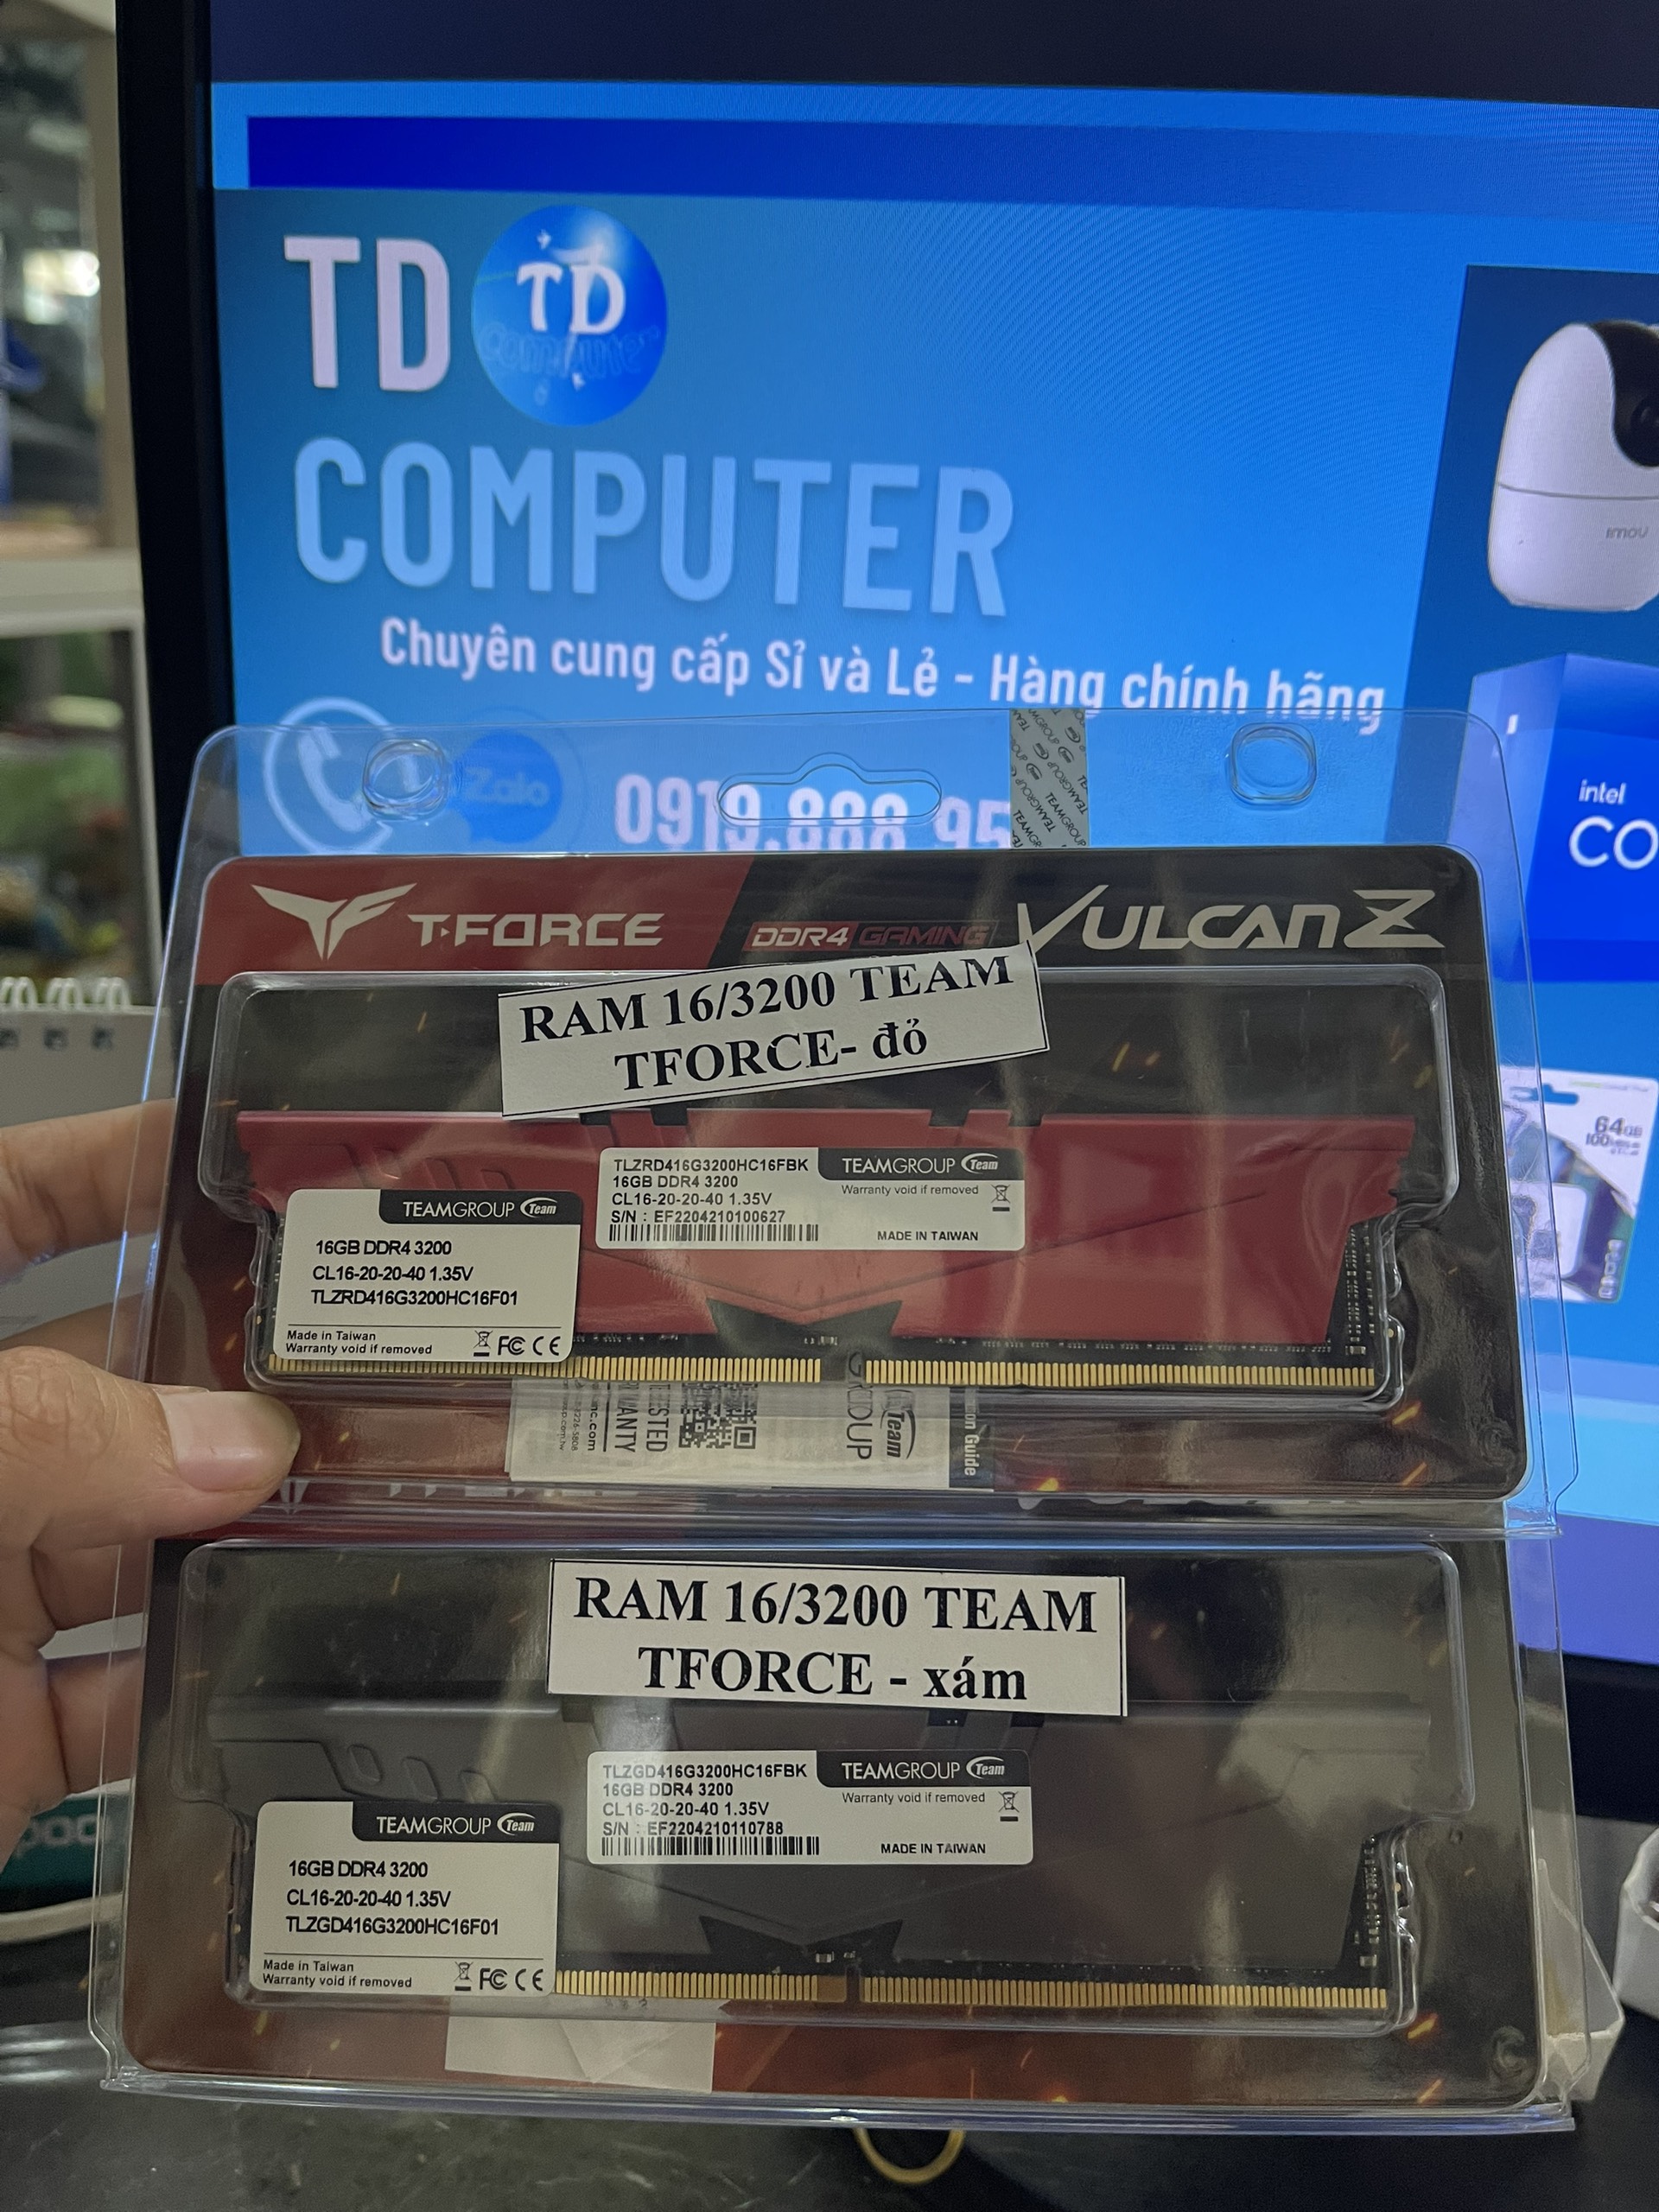 Ram Team T-Force Vulcan Z  [GRAY/ RED] 16GB - 3200MHz DDR4 Tản dày -  Hàng chính hãng Viễn Sơn phân phối